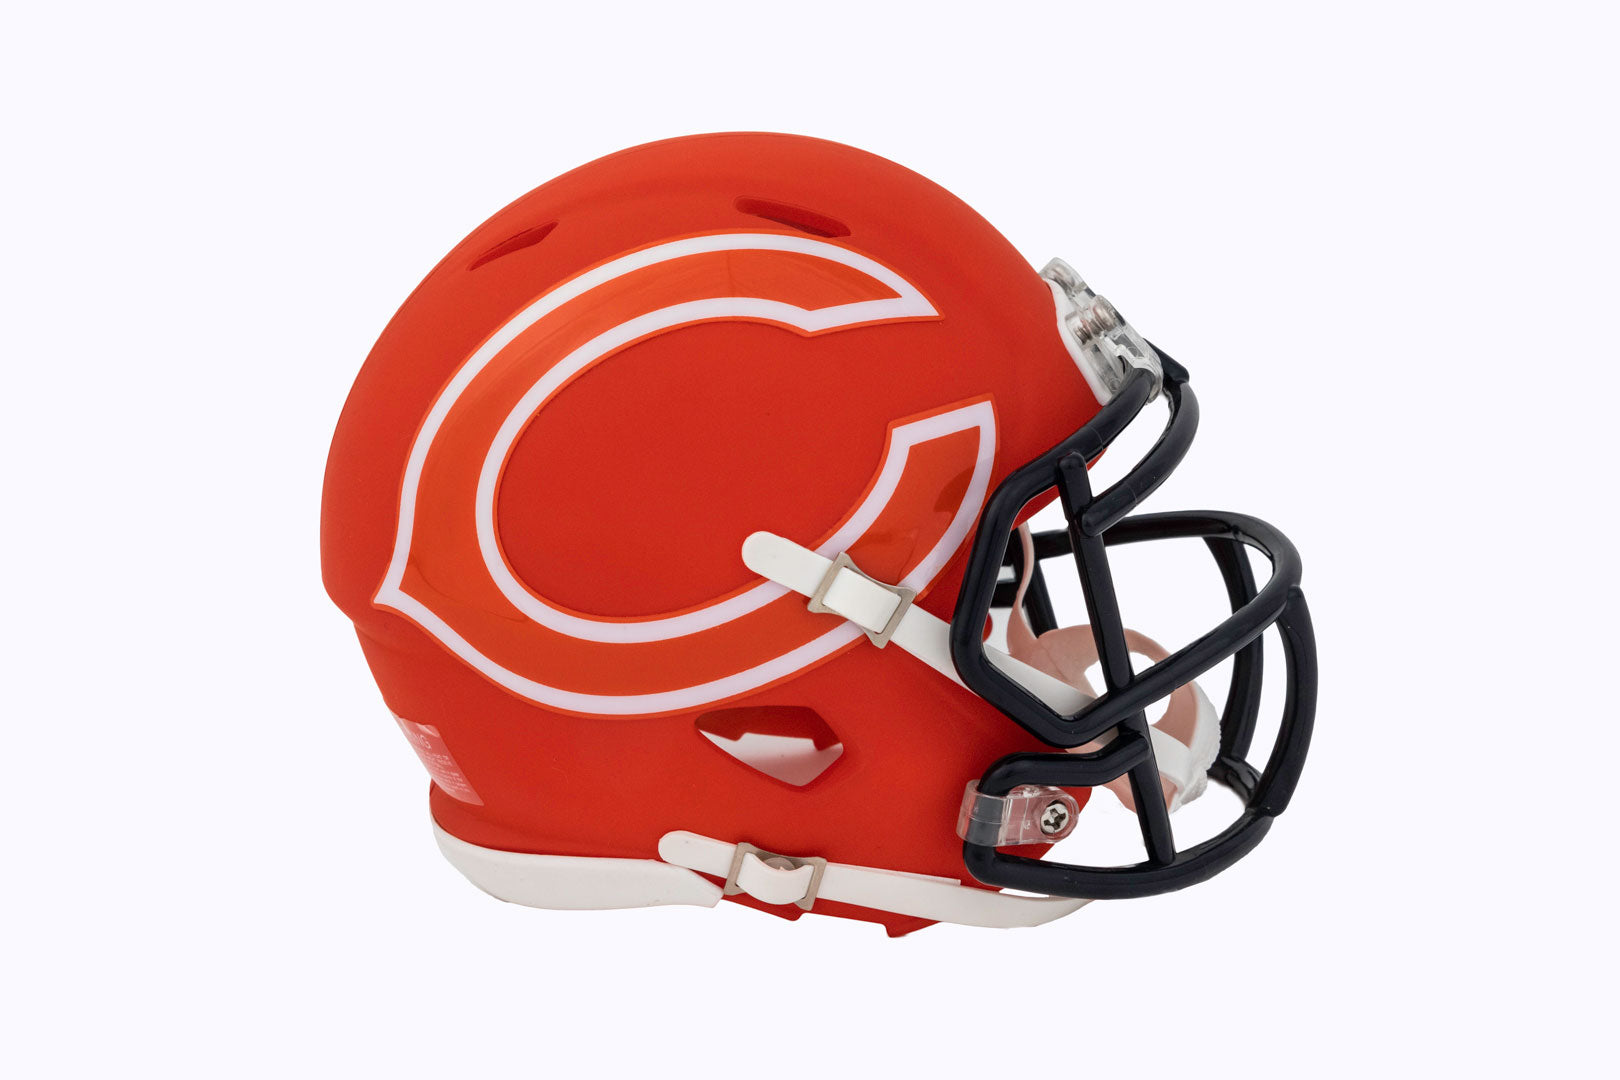 Chicago Bears Speed Mini Helmet Orange With White 'C' – Dick Butkus 51